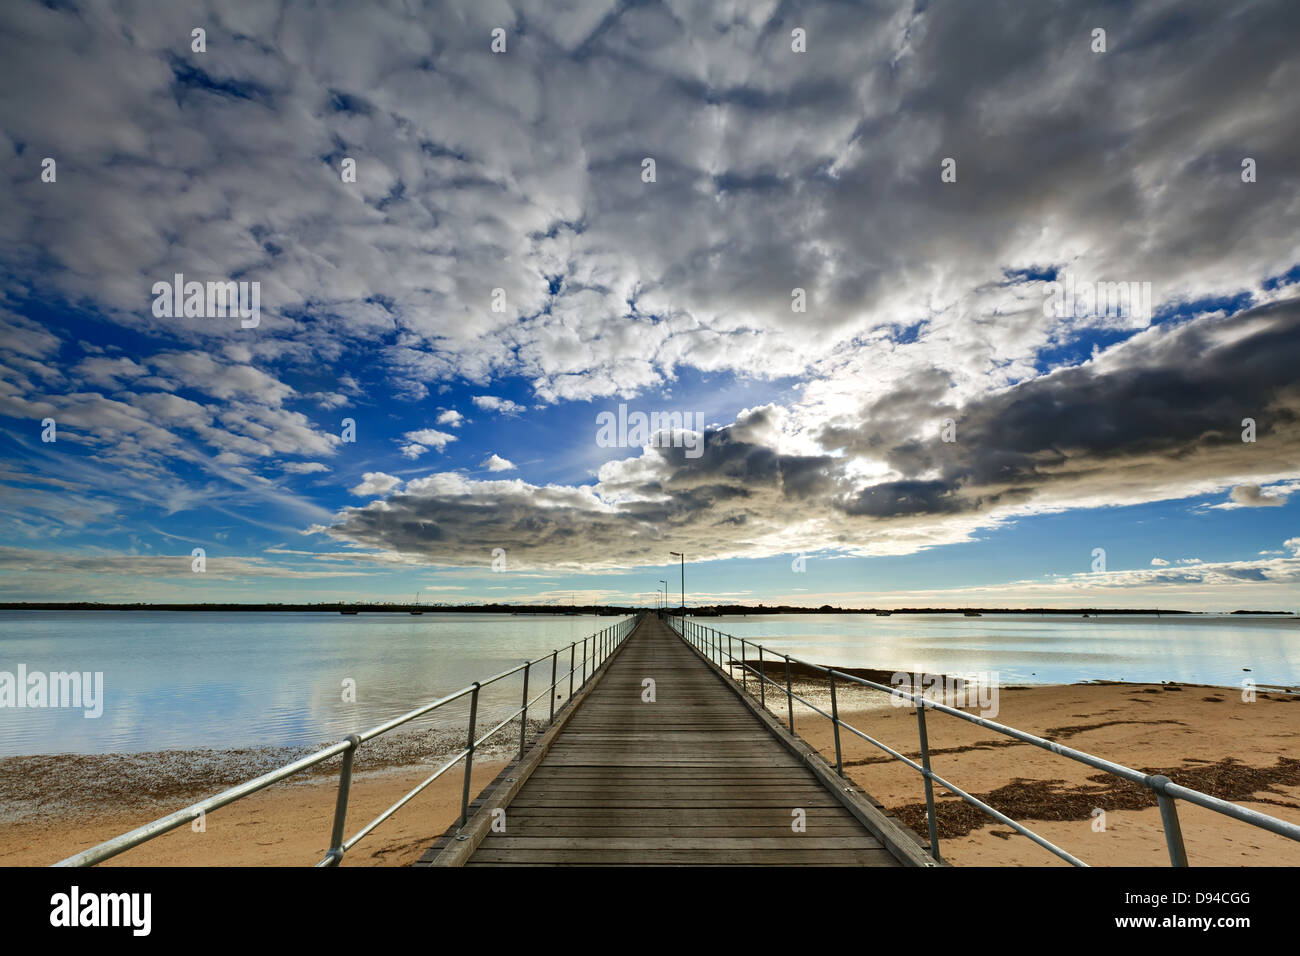 Steg Bucht Wolken Reflexionen Vorland Meer Hafen Pier Hafen Broughton Jetty York Halbinsel South Australien australische Marine Meer Stockfoto